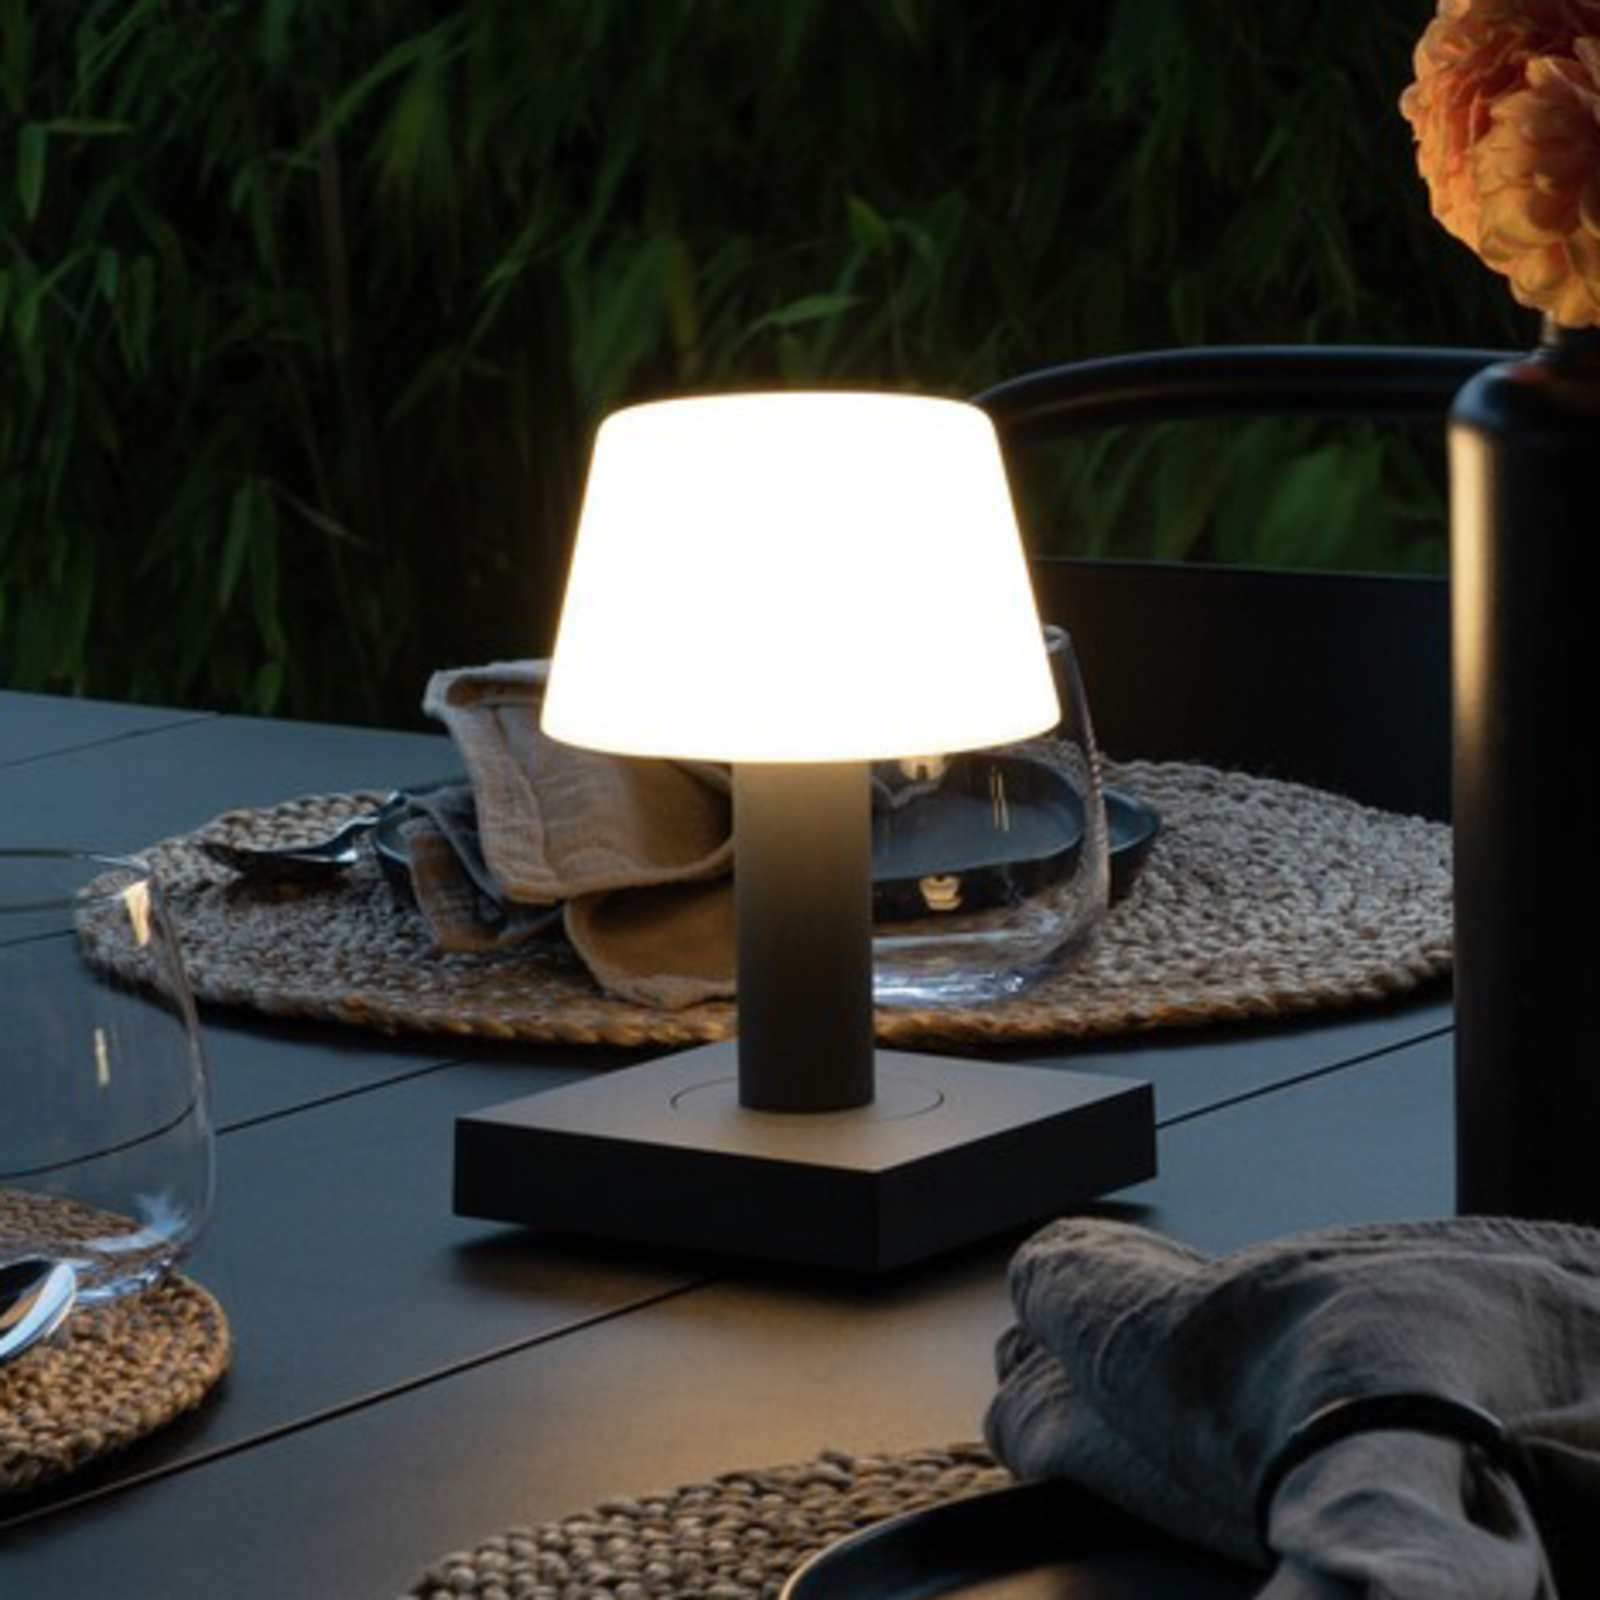 Lampe table LED Monaco, batterie, gris foncé